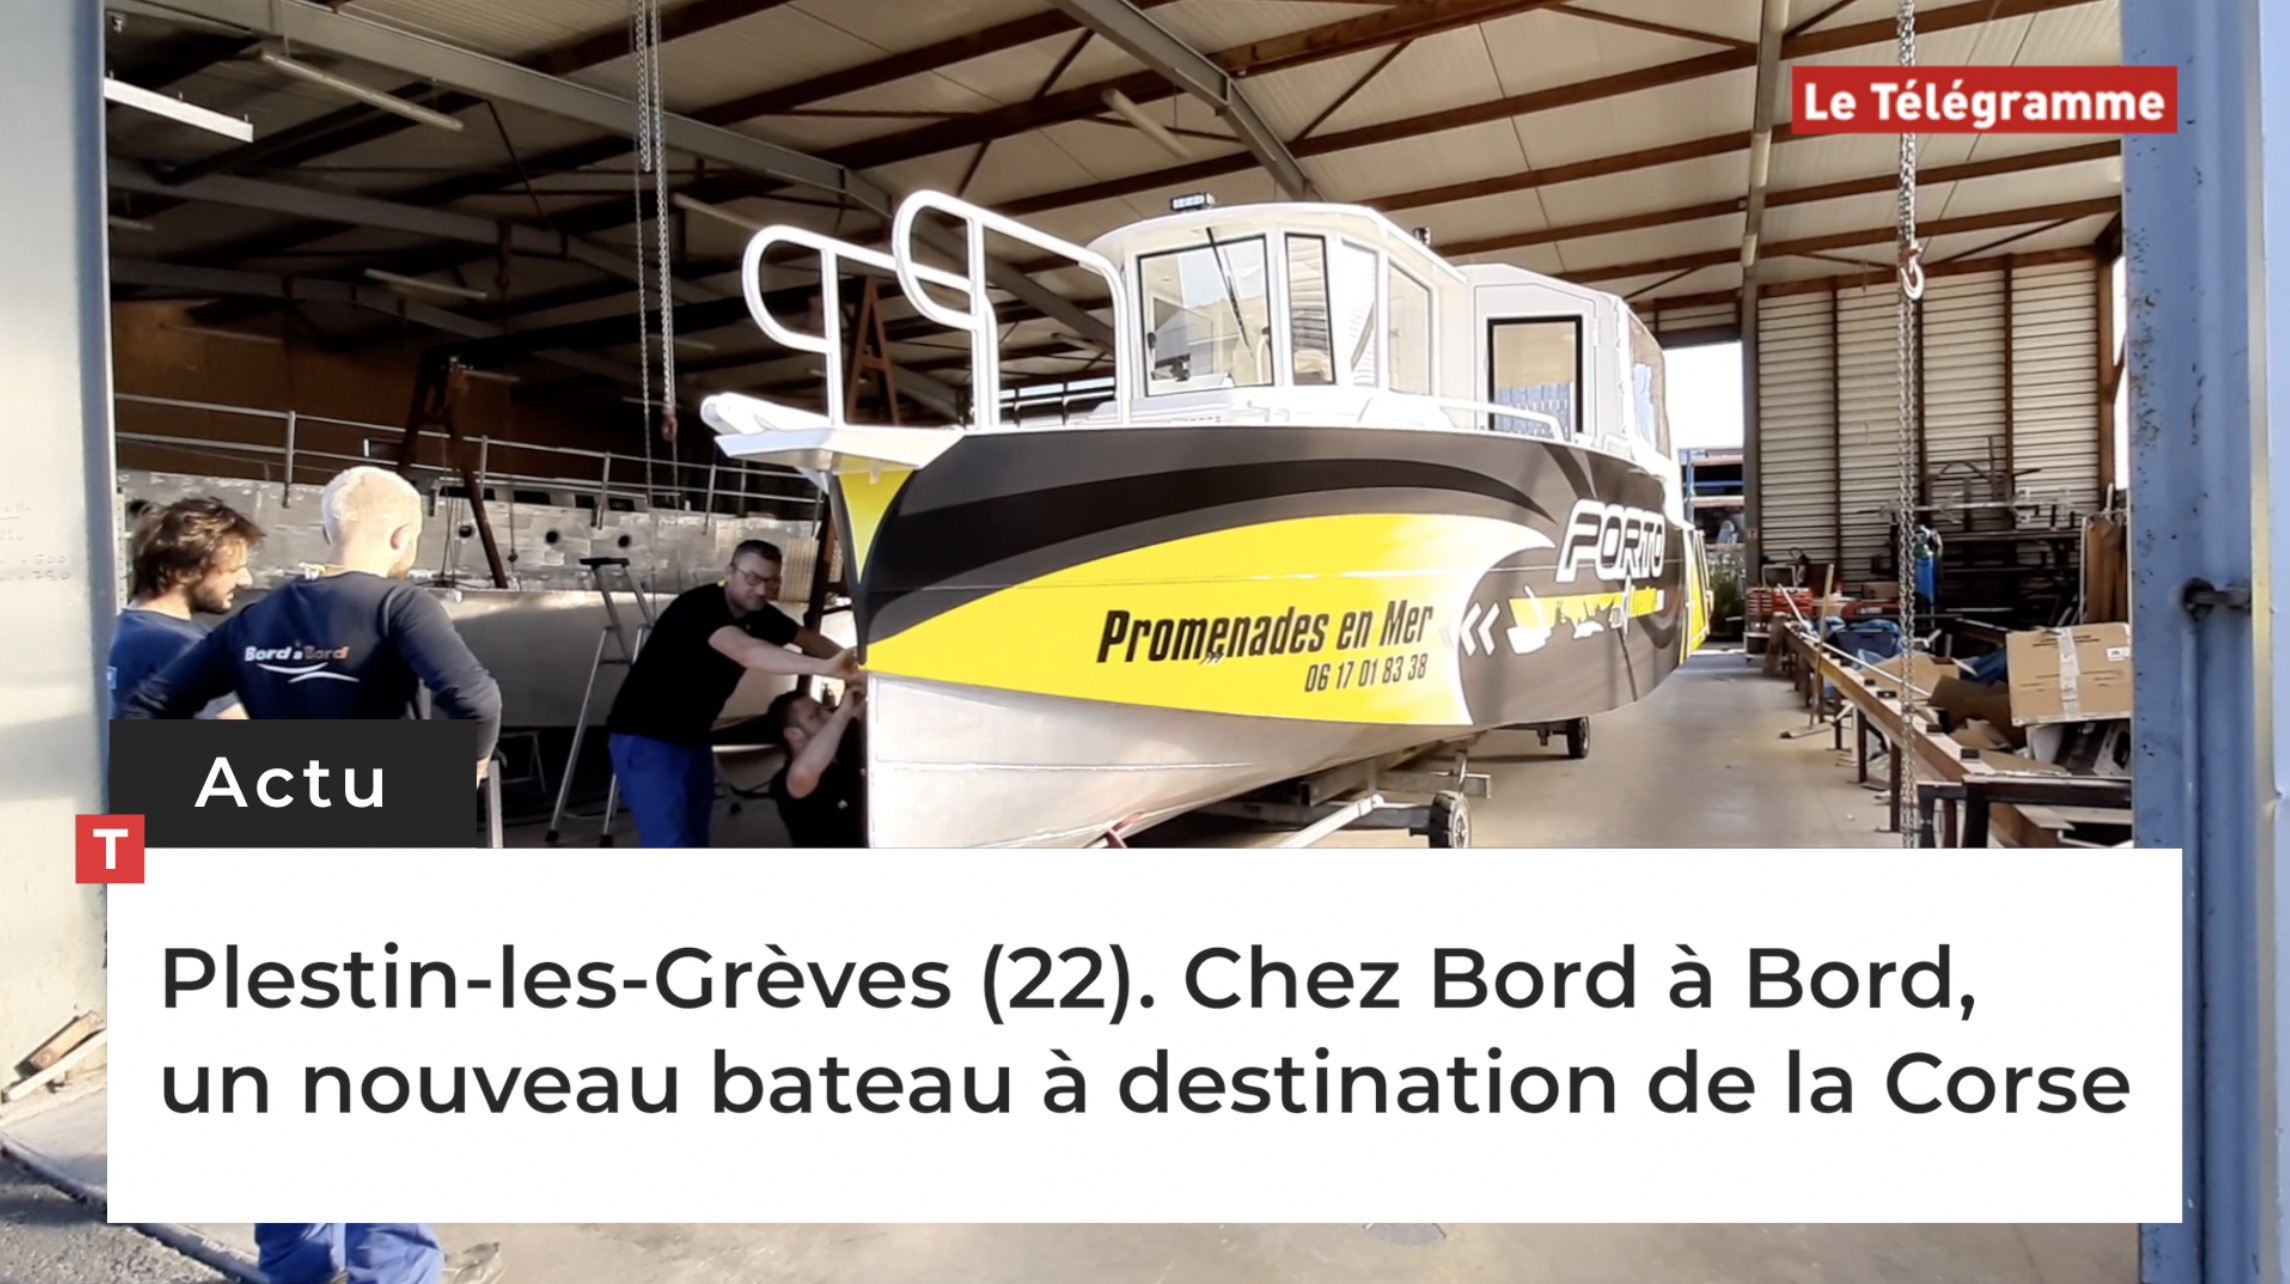 Plestin-les-Grèves (22). Chez Bord à Bord, un nouveau bateau à destination de la Corse (Le Télégramme)